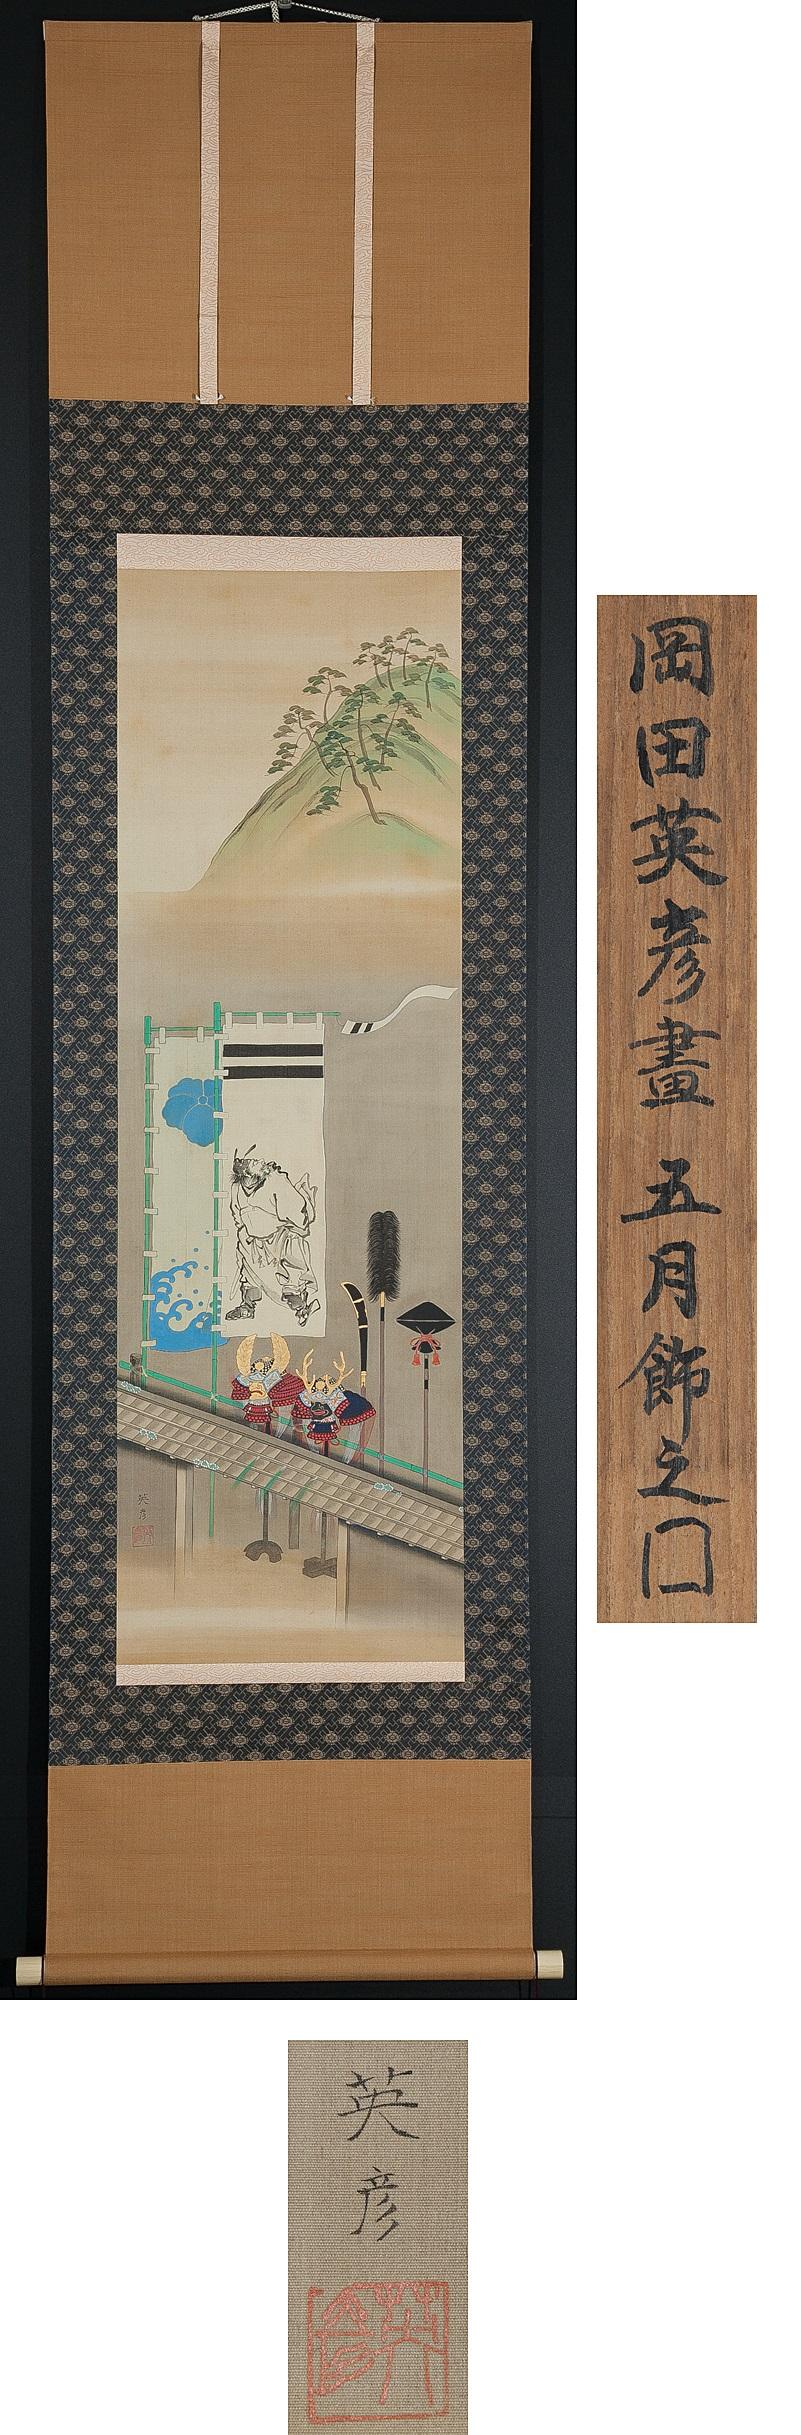 Il s'agit d'un rouleau suspendu réalisé pendant la période Meiji ou Taisho.

Condit : Quelques taches et traces d'usure dues à l'âge :
¦ Axe ... vertical 200,5cm à côté de 49,5cm
Peinture ... verticale 113.3cm horizontale 36cm

Période :
vers